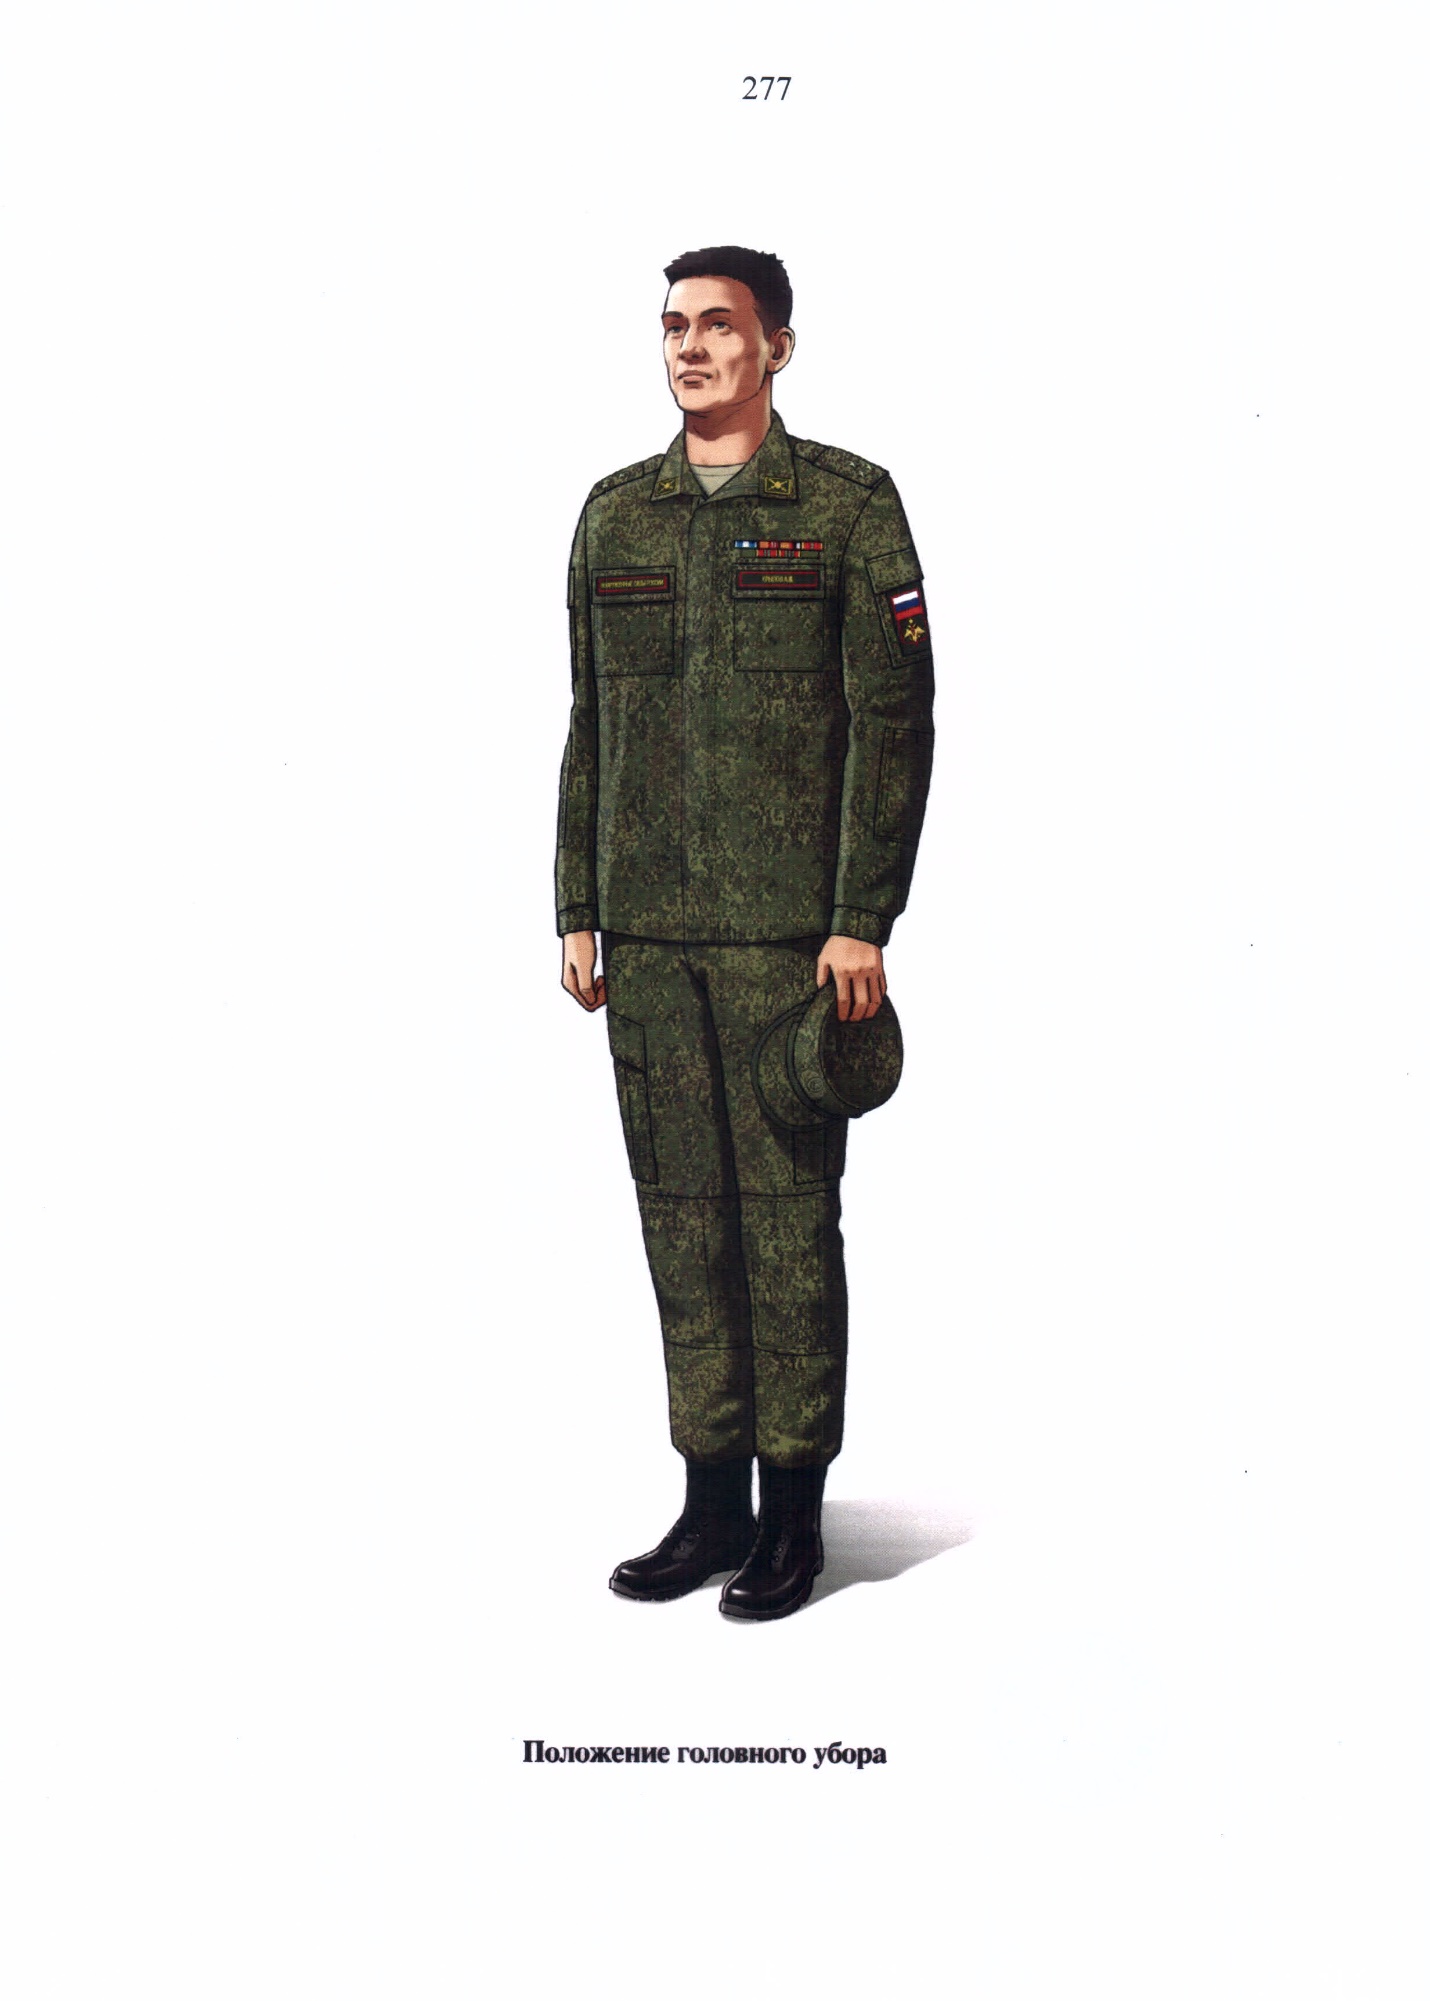 Форма одежды военнослужащих Российской армии 2021